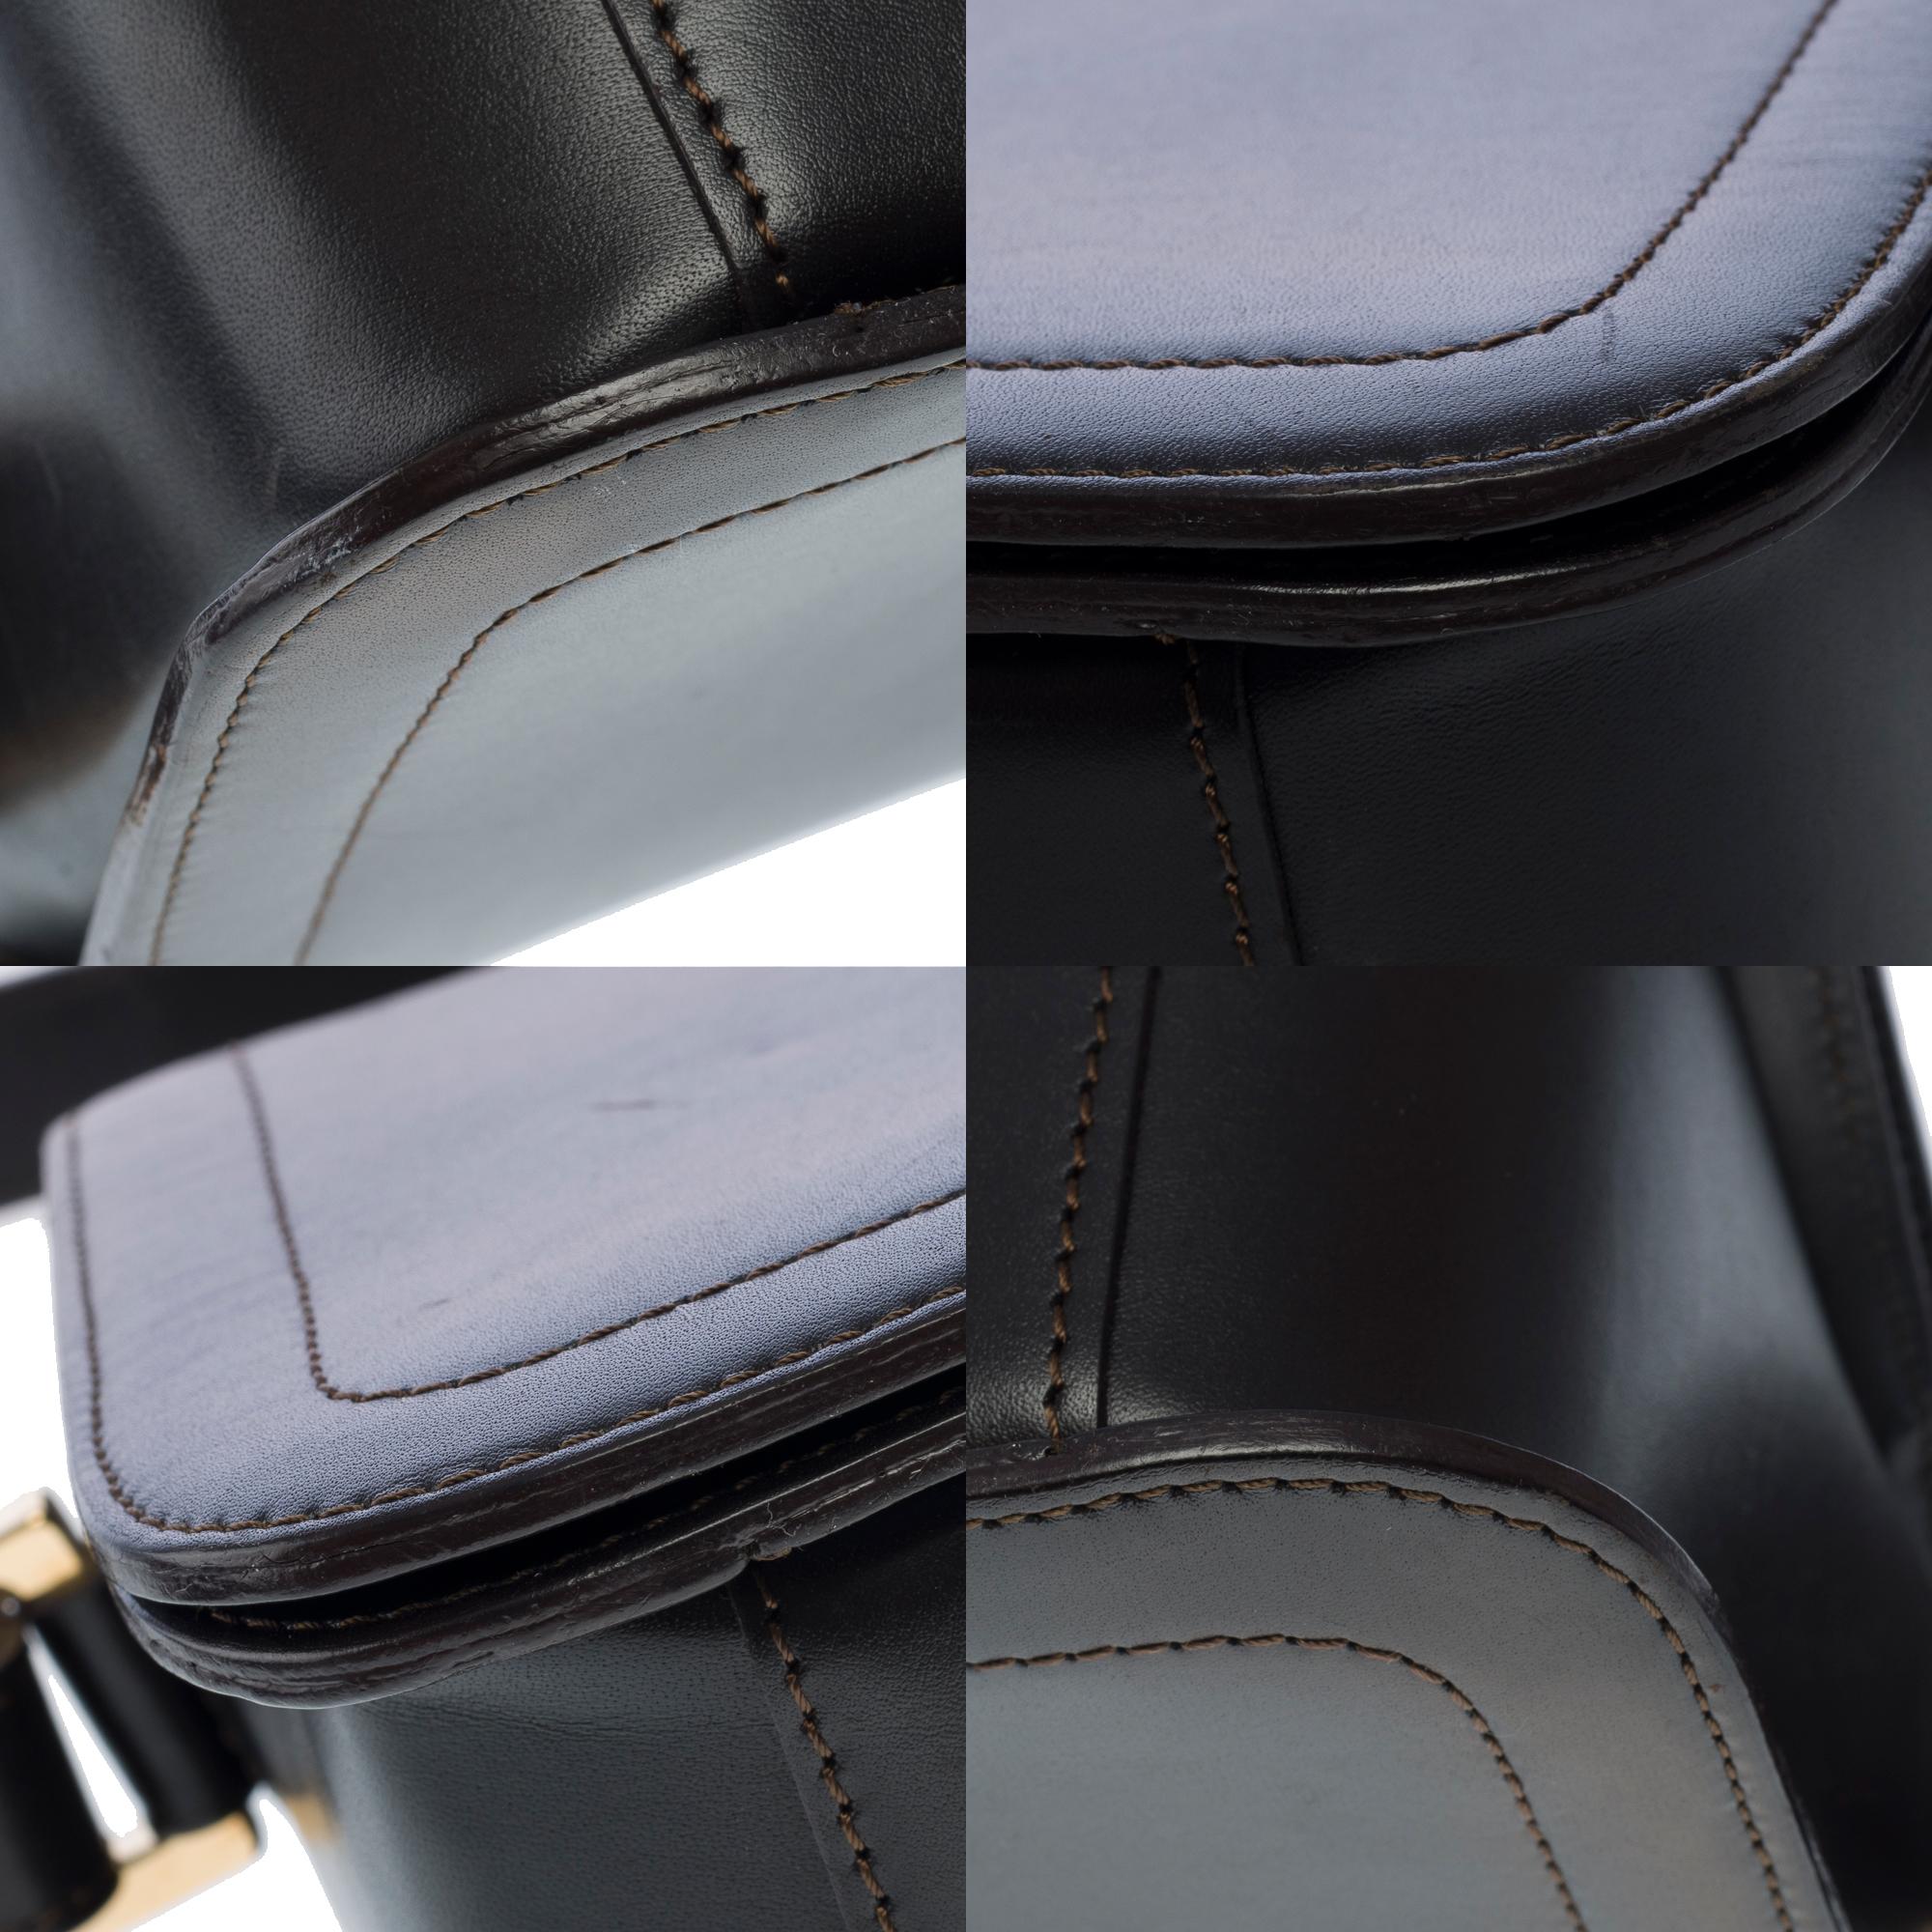 Celine Triomphe shoulder flap bag in black leather, GHW 7